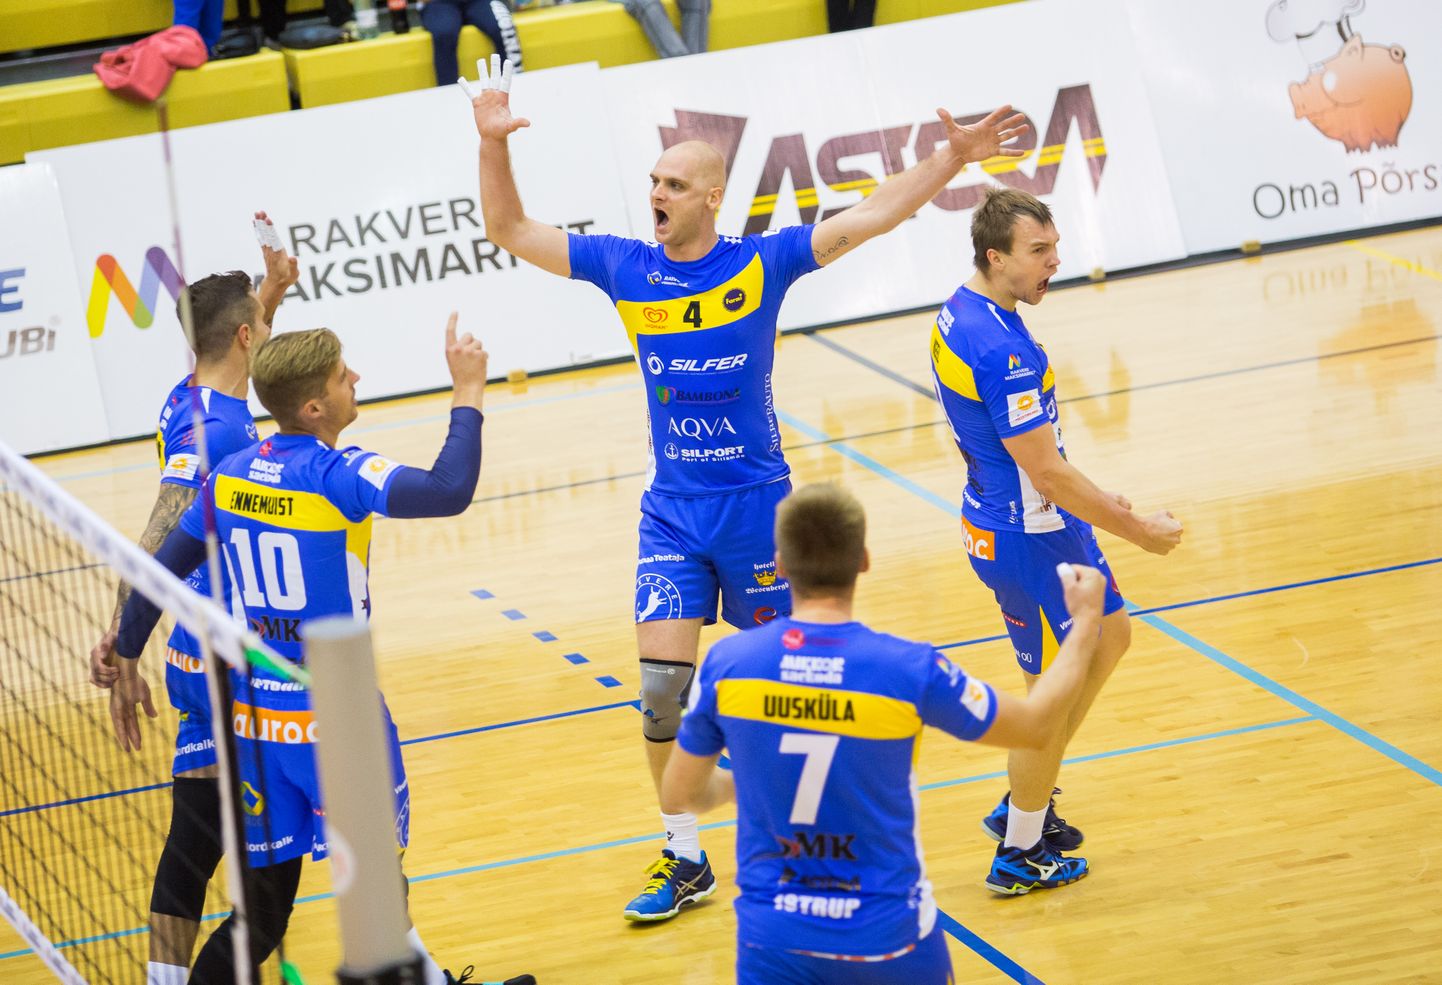 Rakvere Võrkpalliklubi tagas pääsu Balti liiga finaalturniirile.